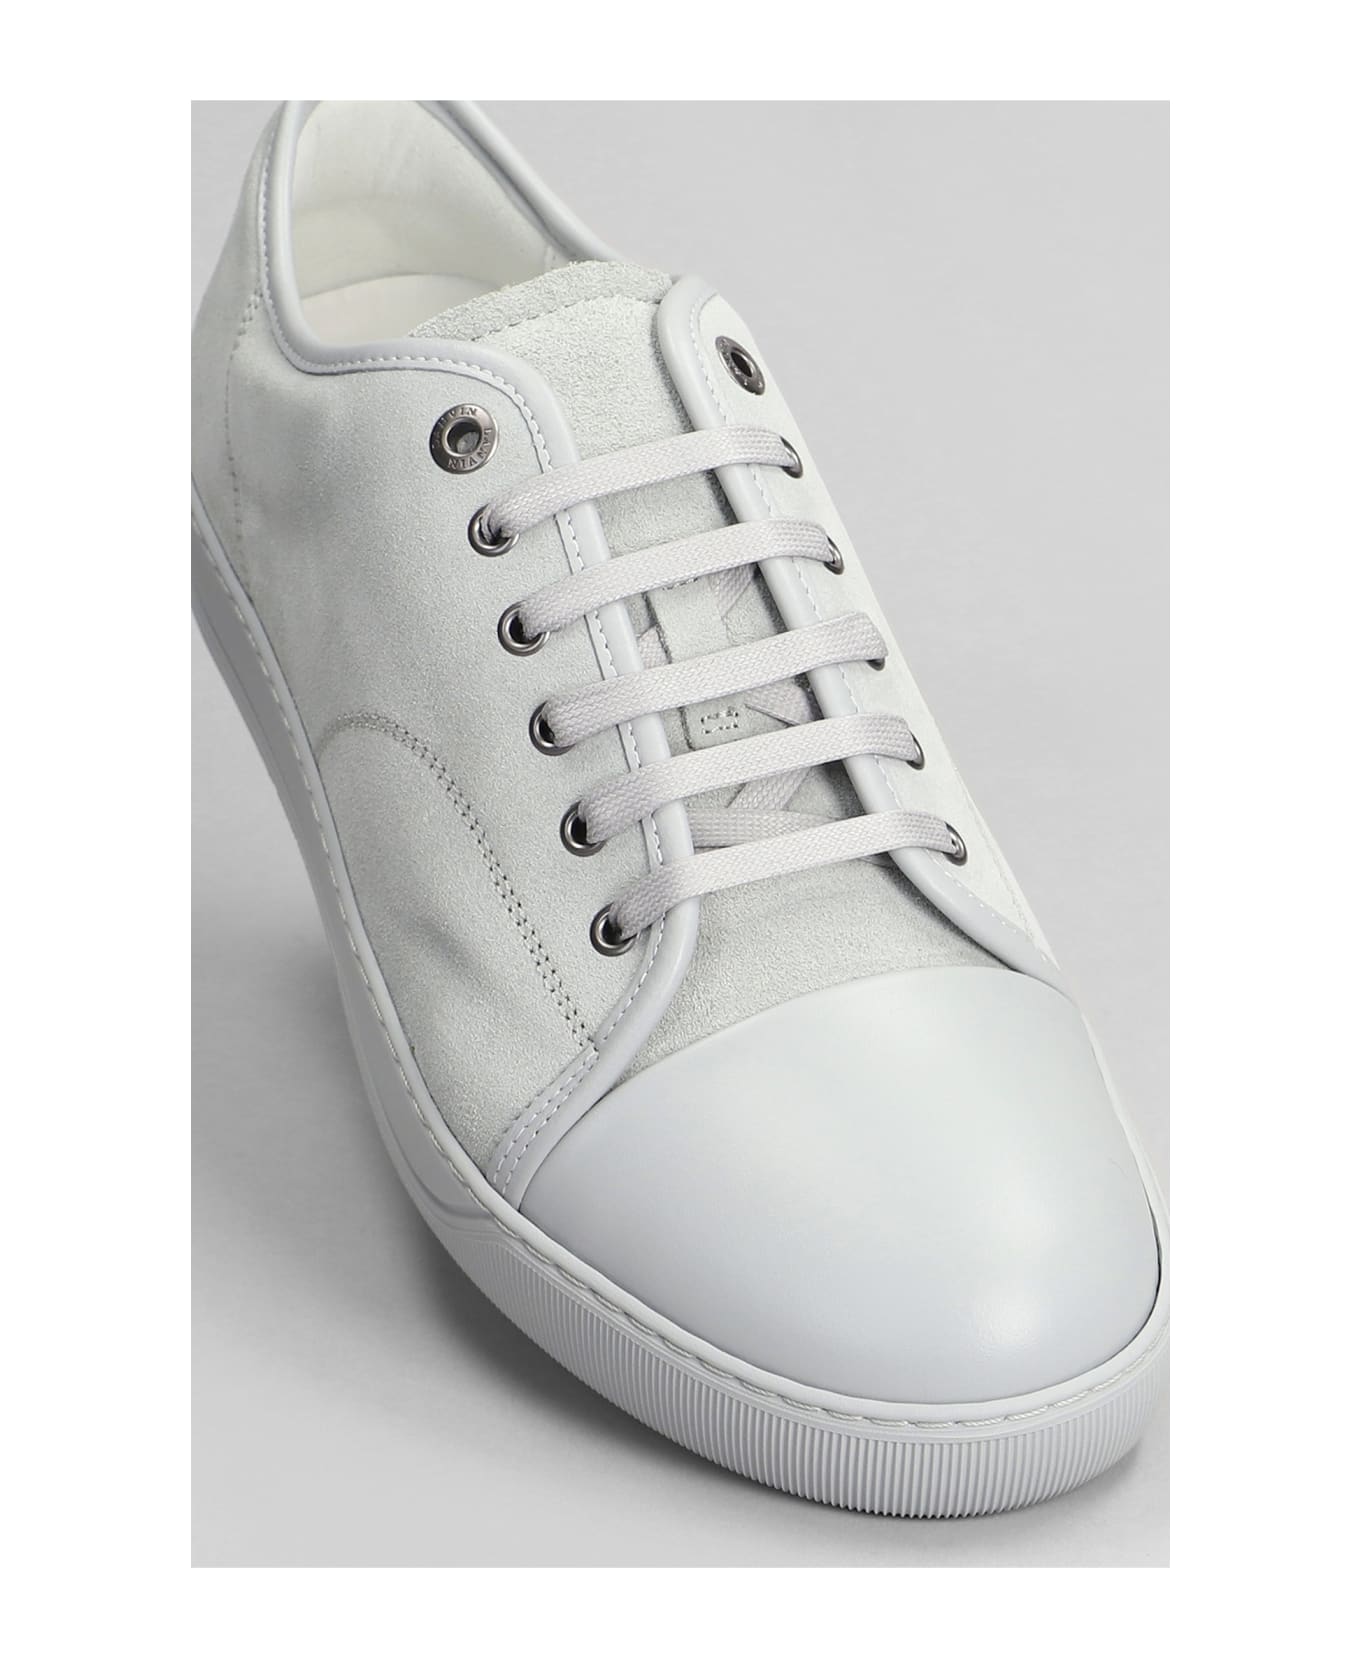 Lanvin Dbb1 Sneakers In Grey Suede - grey